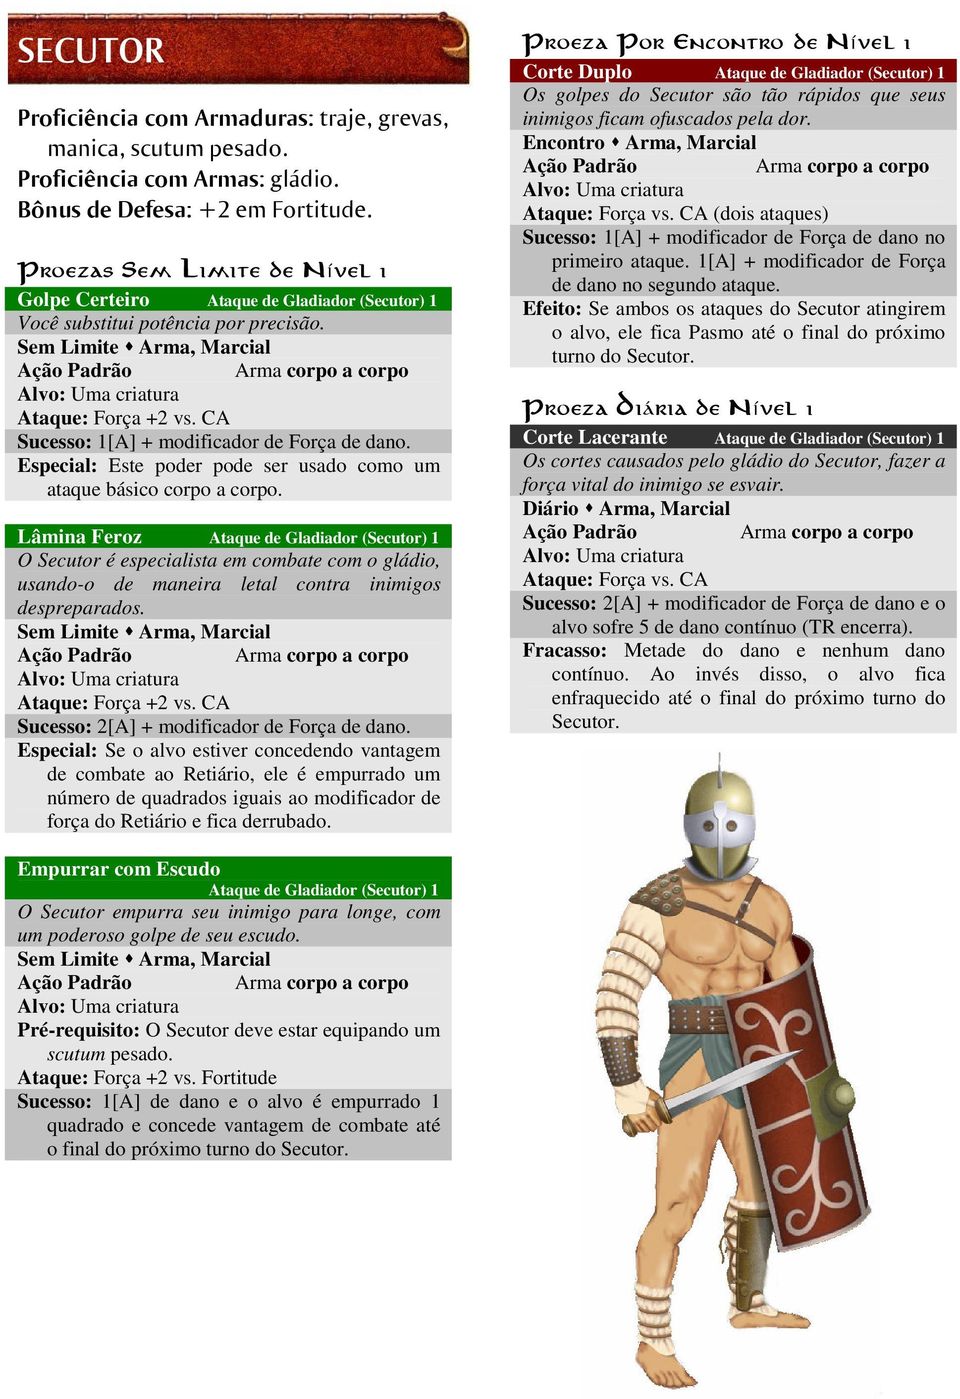 Lâmina Feroz Ataque de Gladiador (Secutor) 1 O Secutor é especialista em combate com o gládio, usando-o de maneira letal contra inimigos despreparados. Sucesso: 2[A] + modificador de Força de dano.